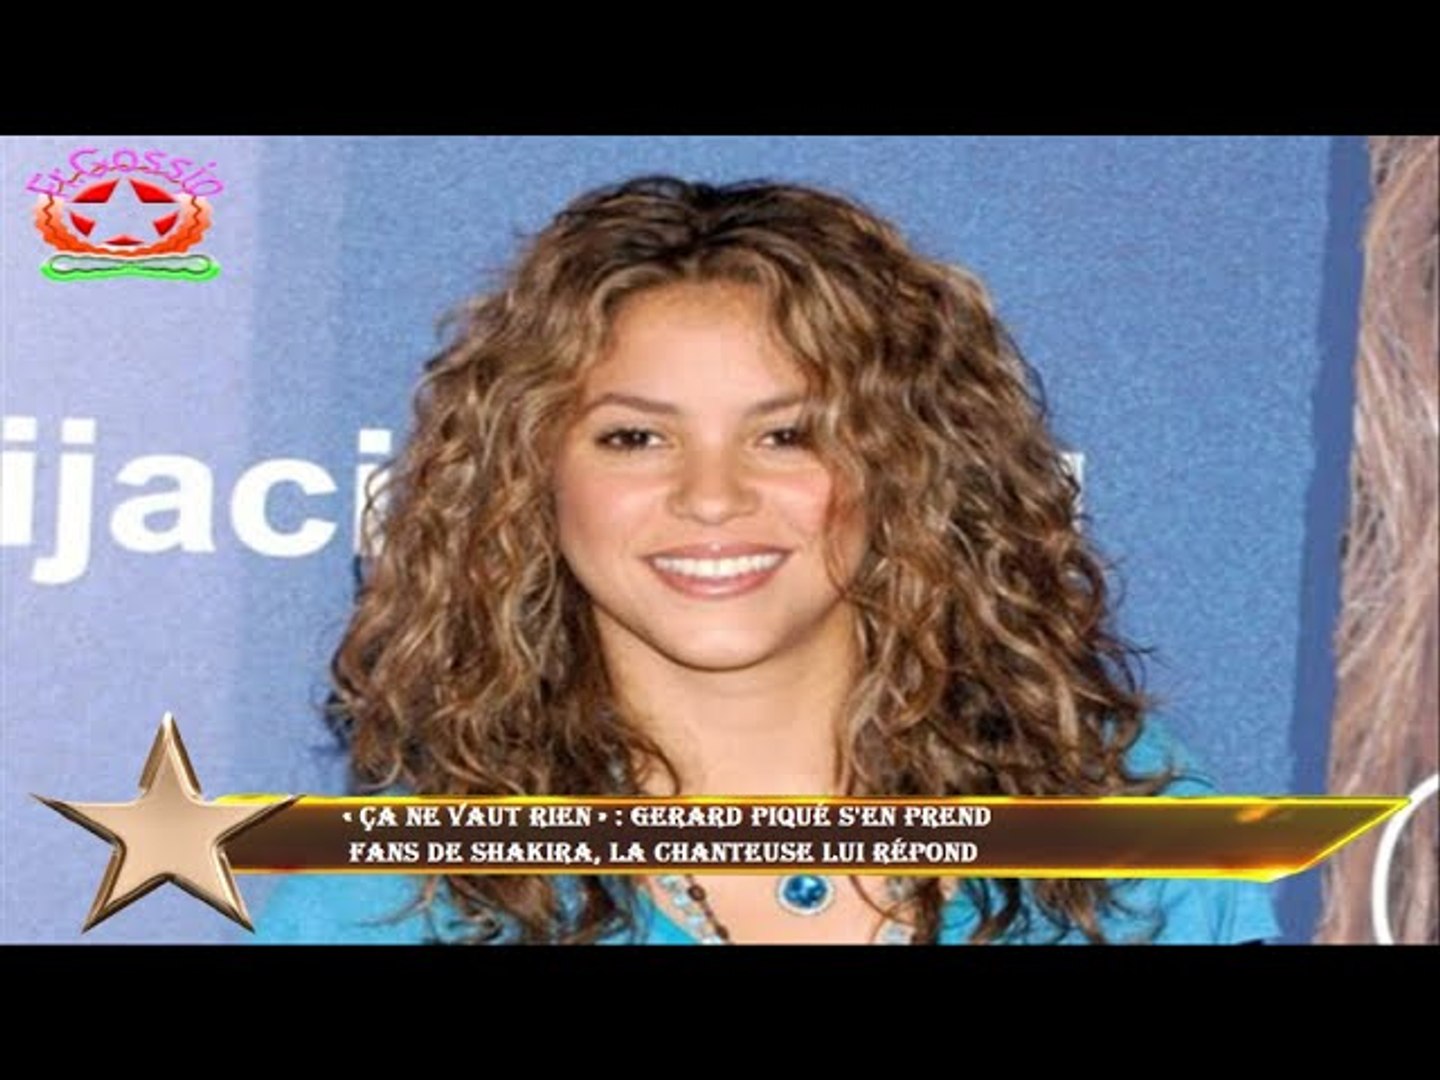 Ça ne vaut rien » : Gerard Piqué s'en prend fans de Shakira, la chanteuse  lui répond - Vidéo Dailymotion